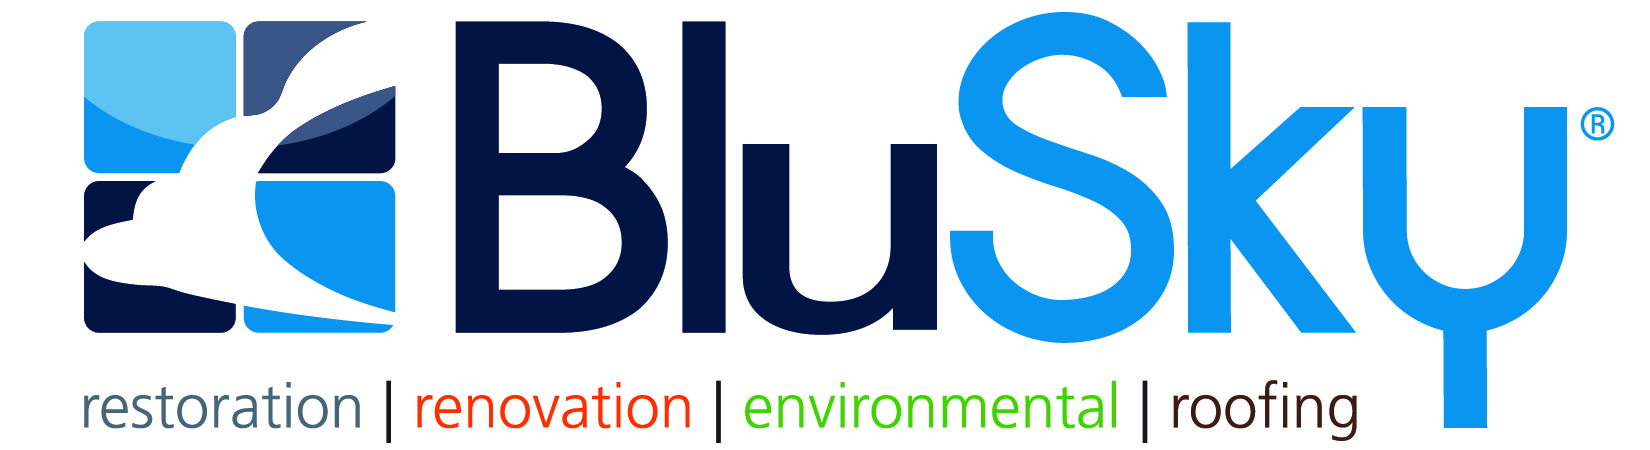 BluSky's Logo